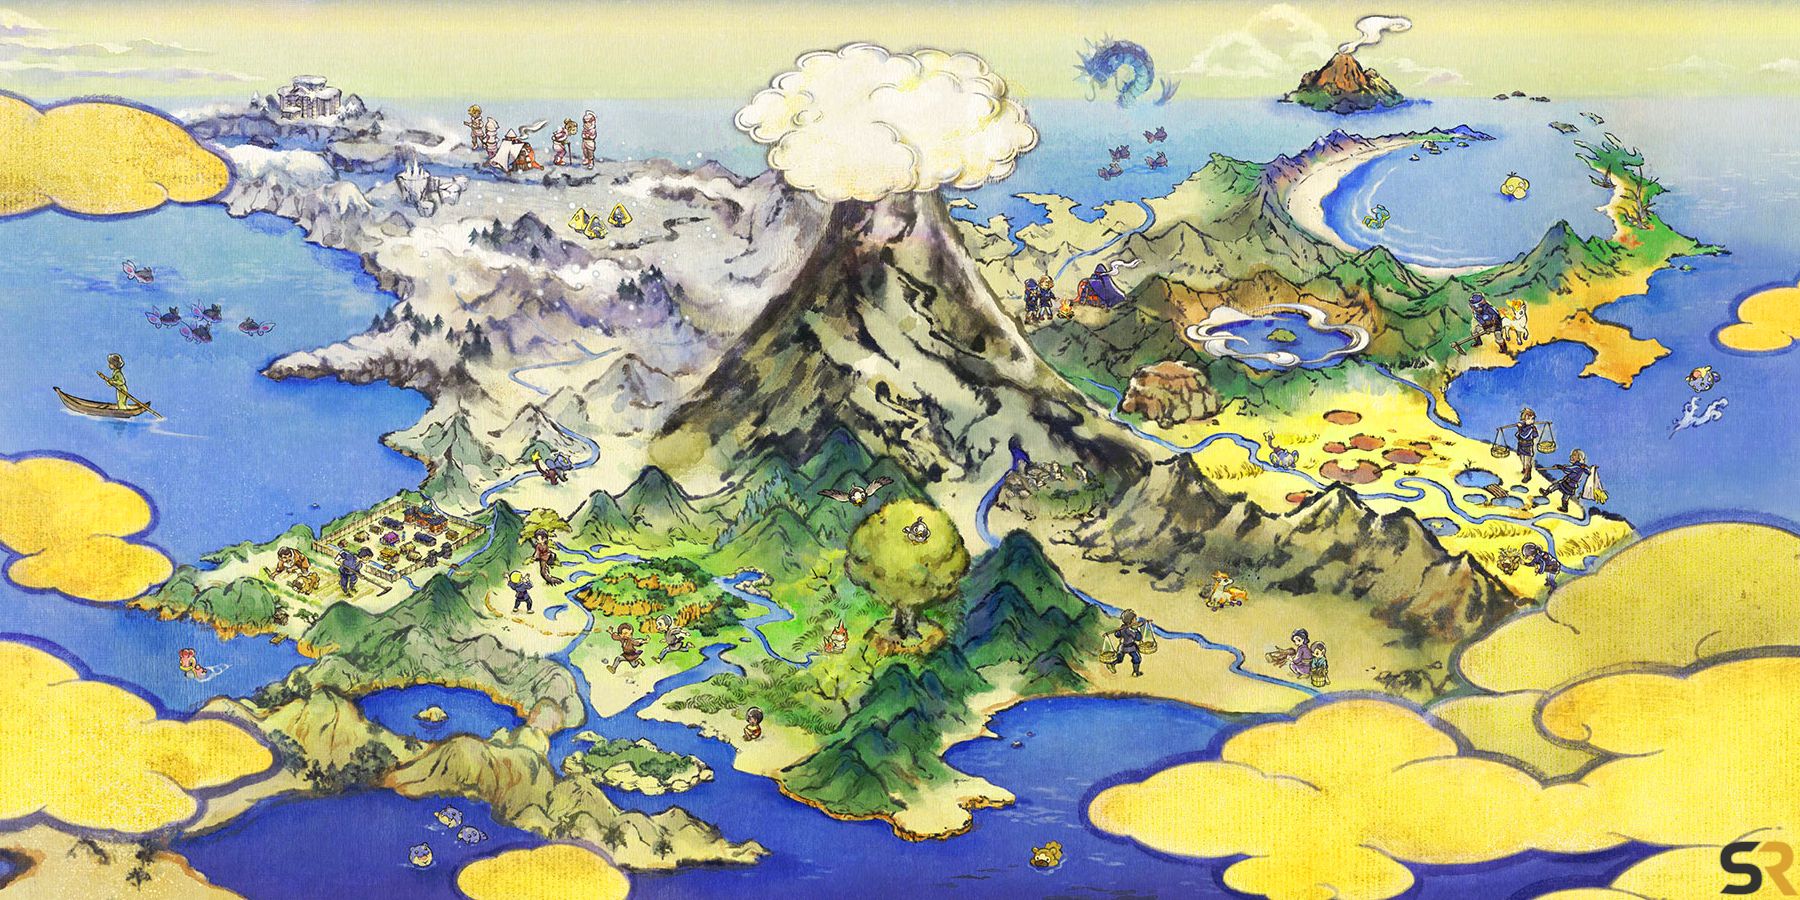 Pokémon Legends Arceus Map